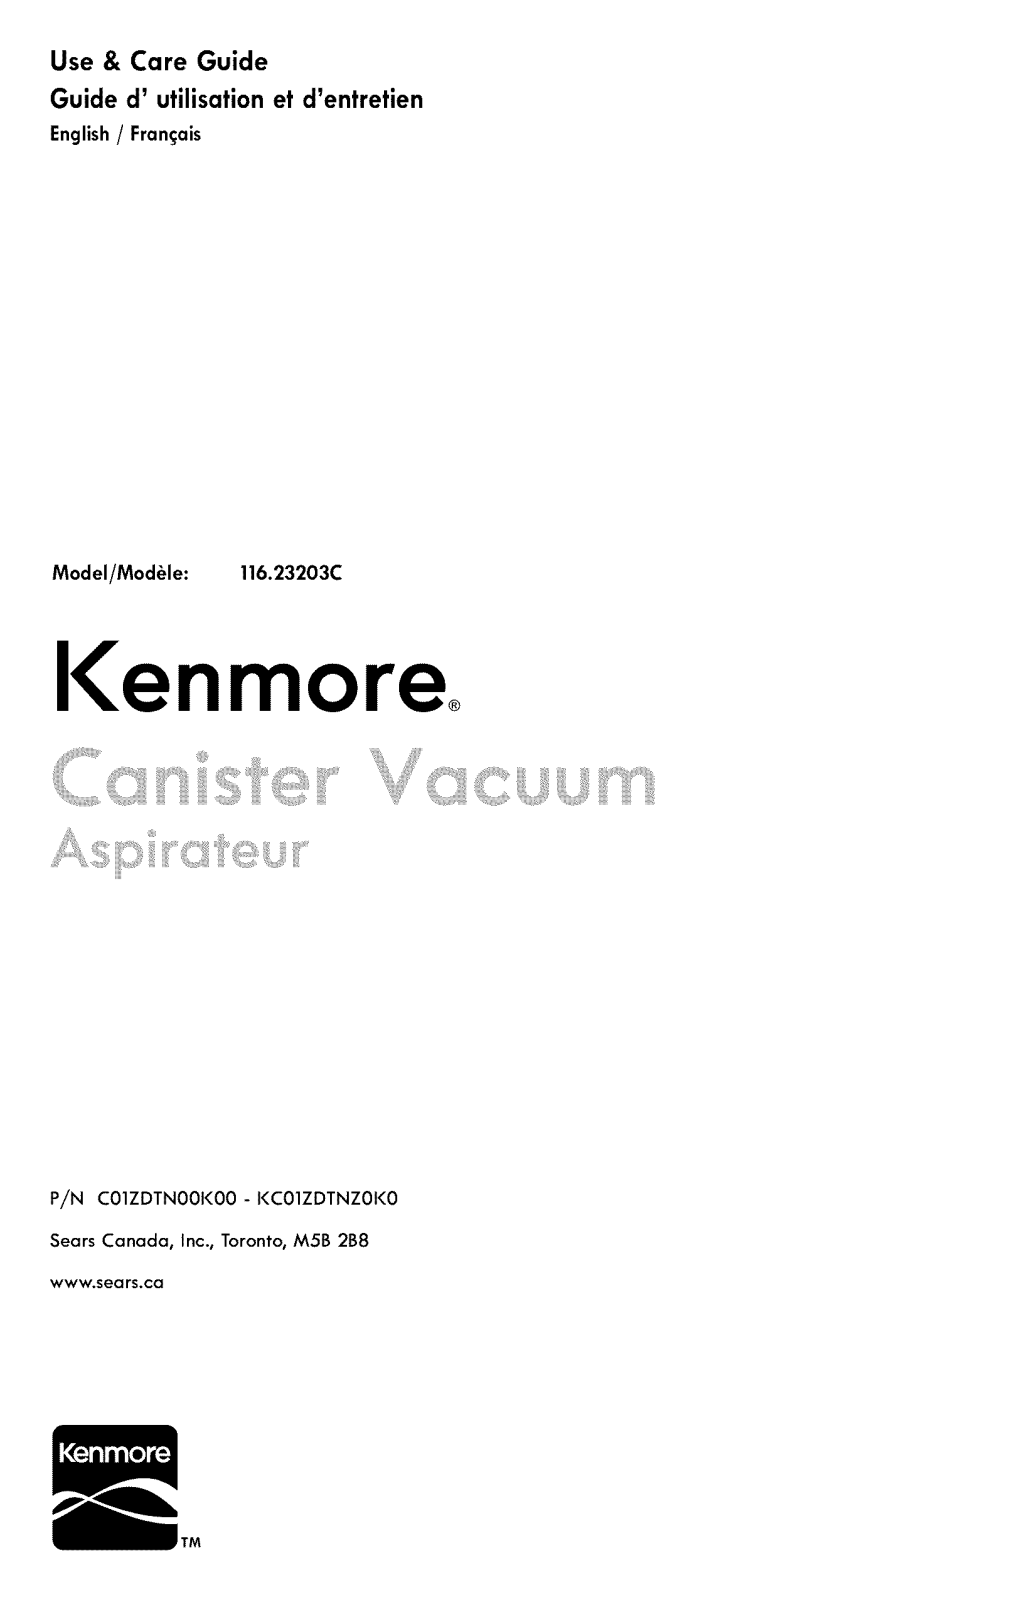 Kenmore 11653203902C, 11623203903C, 11623203902C Owner’s Manual